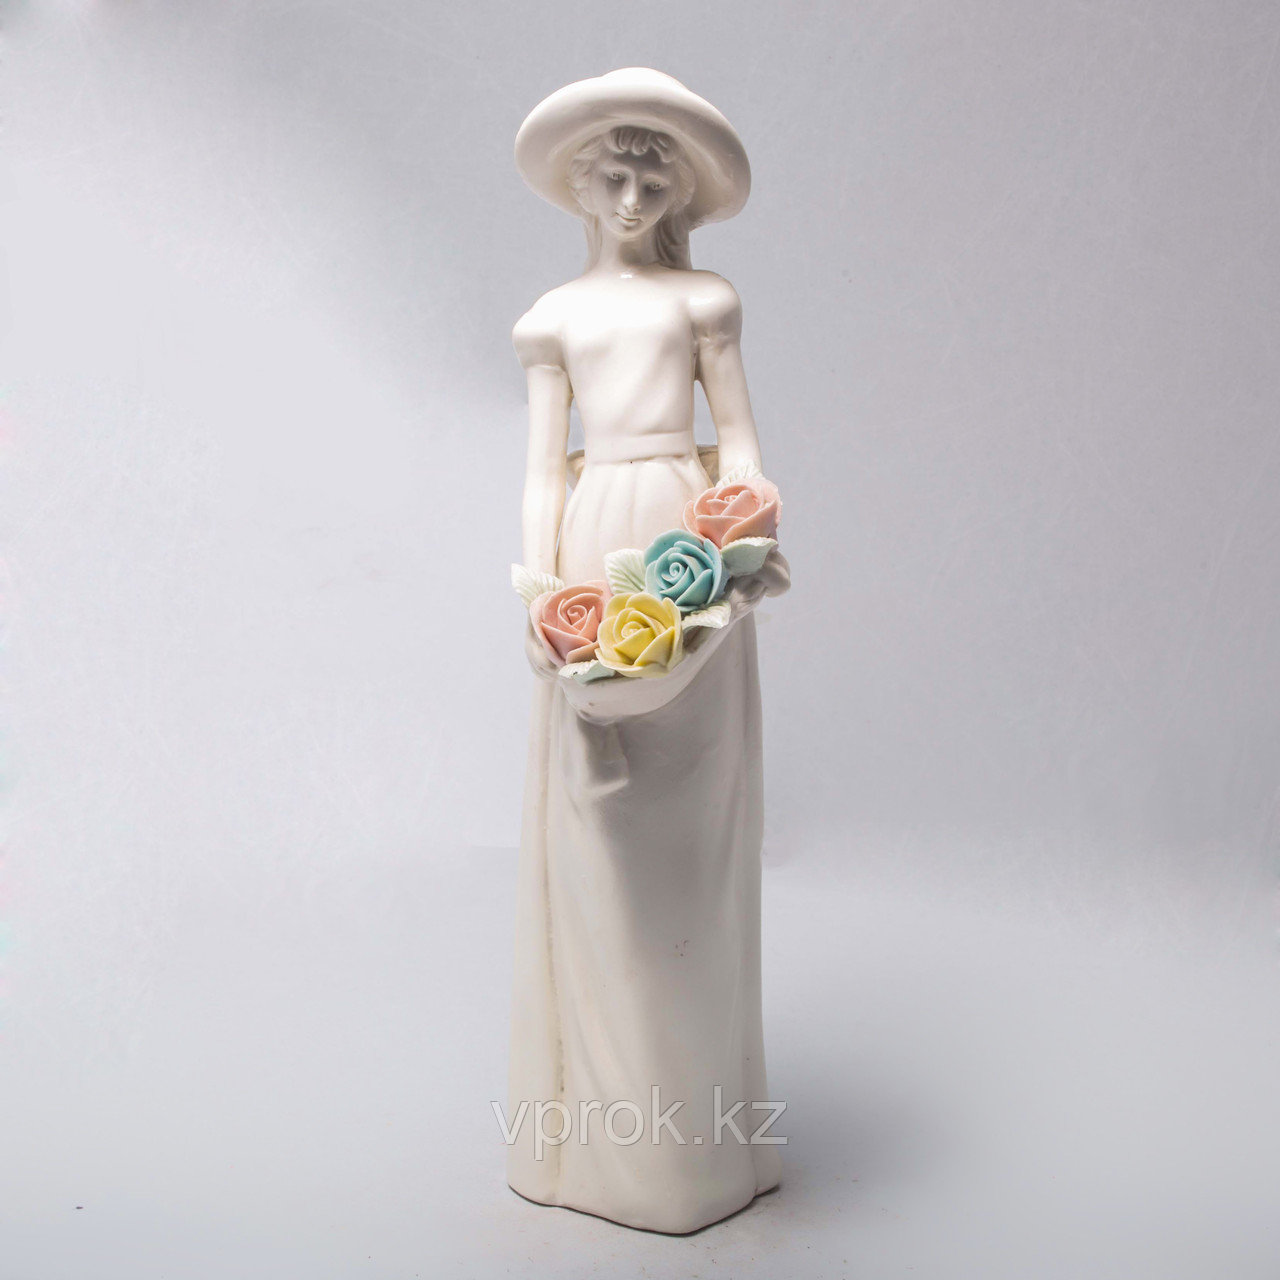 Фарфоровая статуэтка "Девушка с цветами"